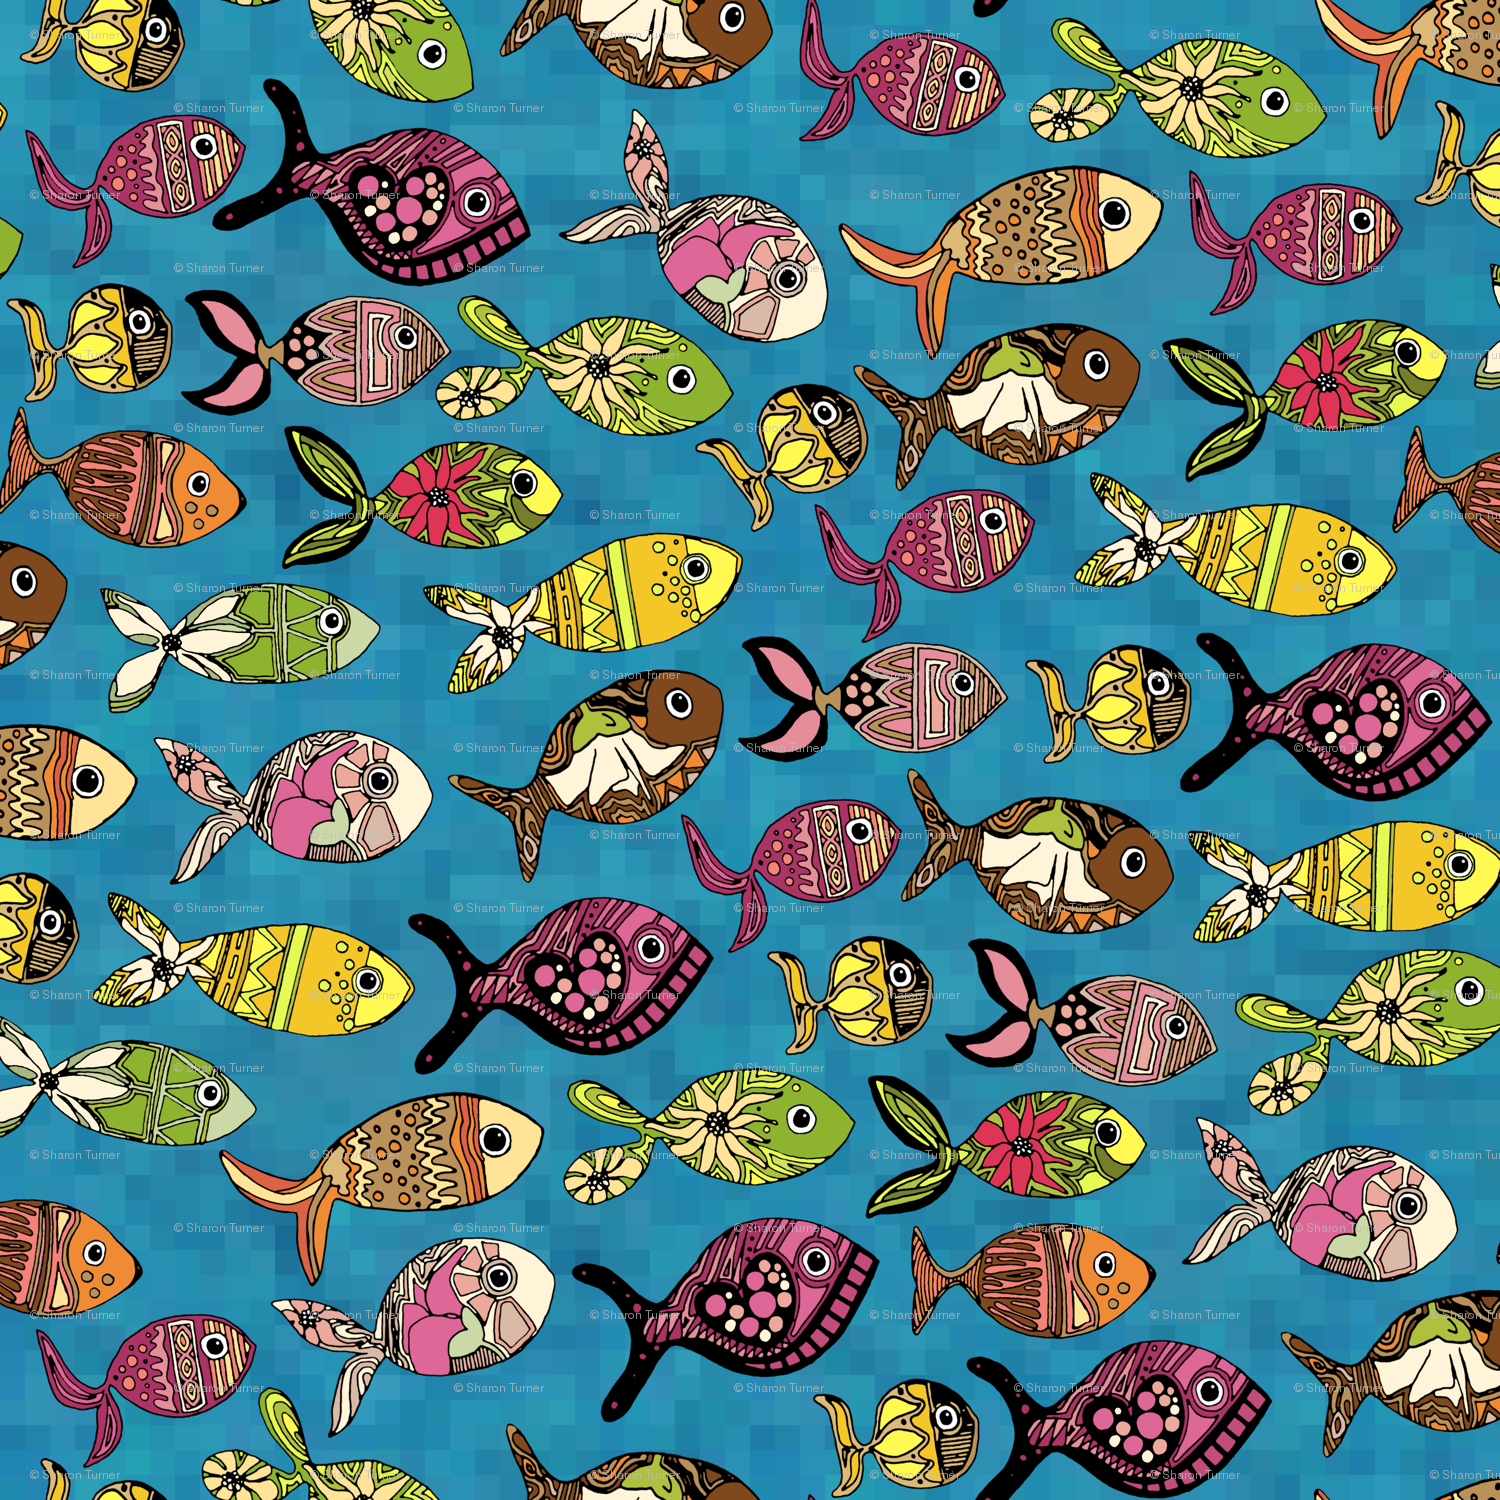 魚のデザインの壁紙,パターン,繊維,設計,包装紙,視覚芸術